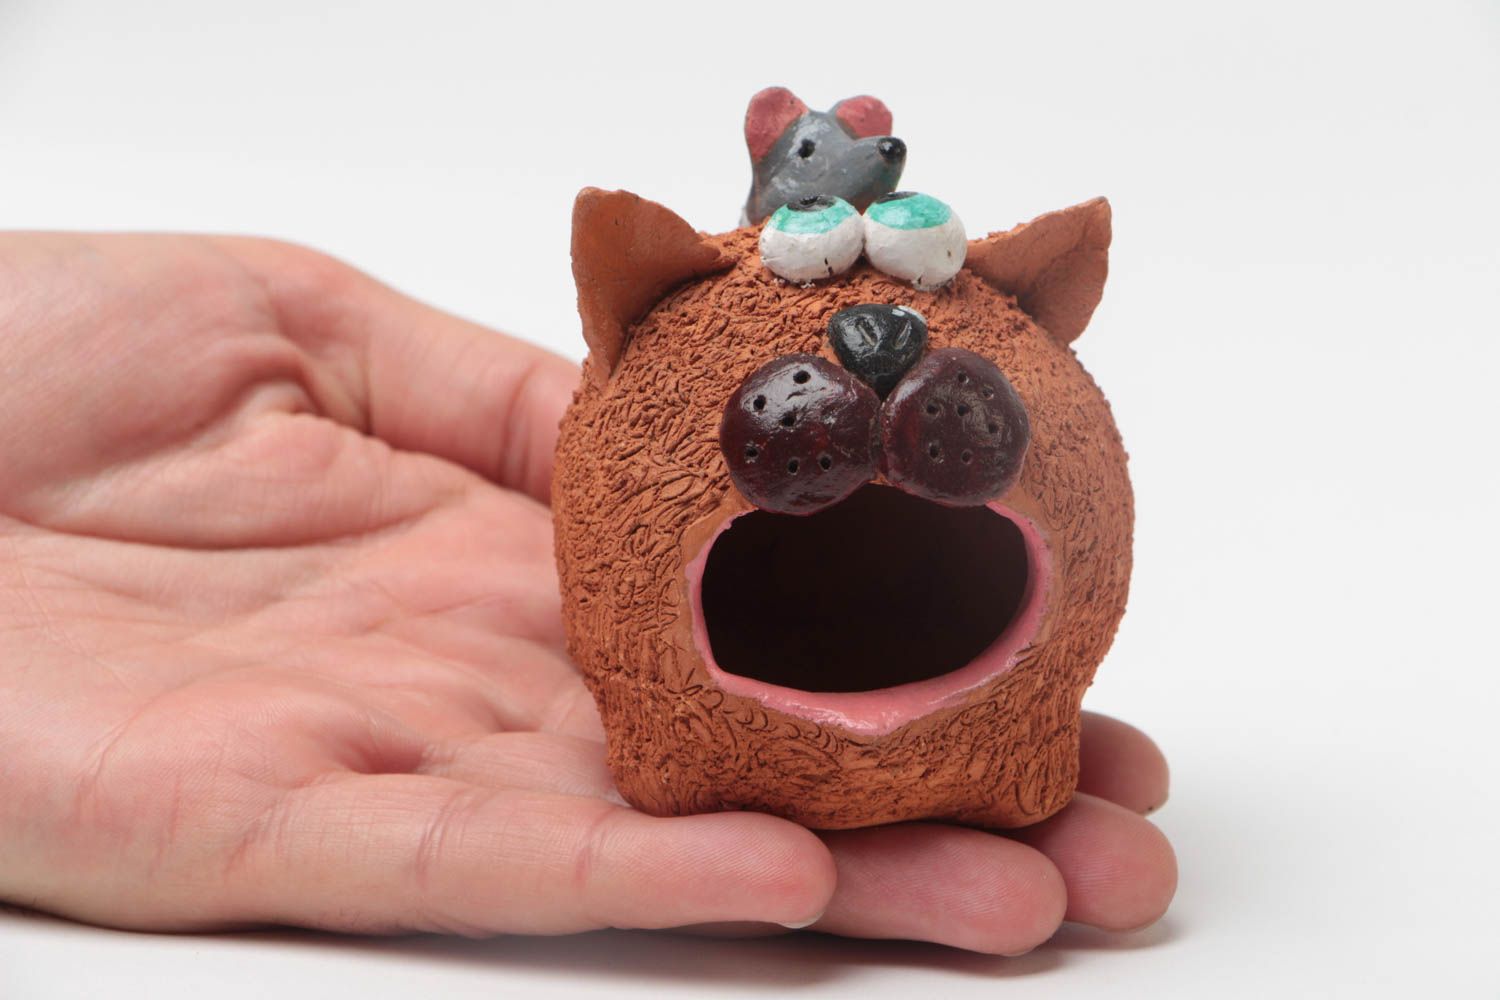 Керамическая фигурка кота ручной работы из глины расписанная красками забавная фото 5